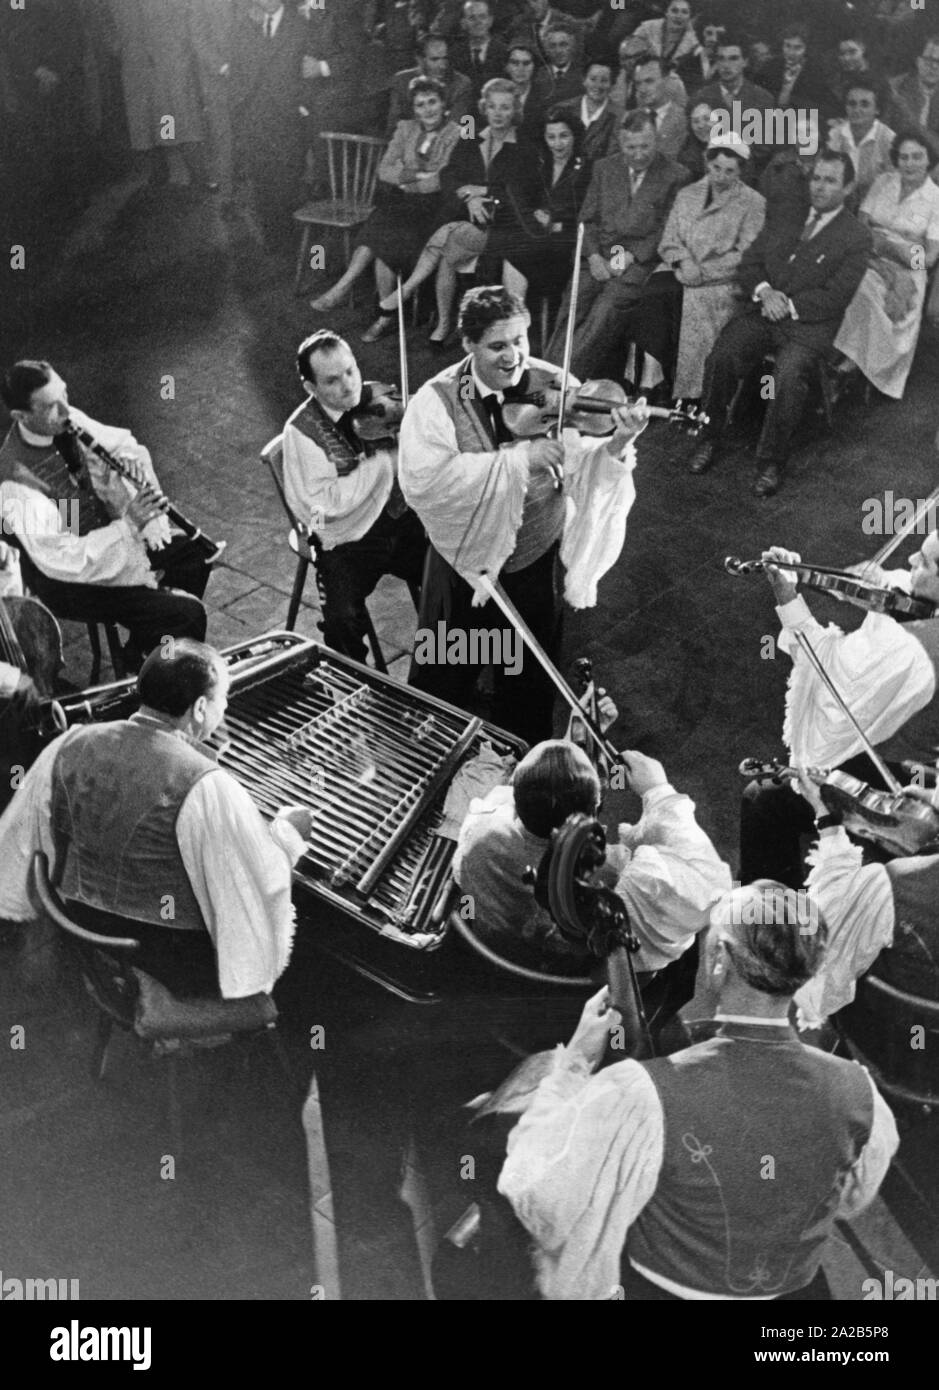 Eine Gruppe von Musikern spielt die ungarische Volksmusik. Hier vermutlich eine Szene aus der Operette "Der zigeunerprimas" (Undatiertes Foto). Stockfoto